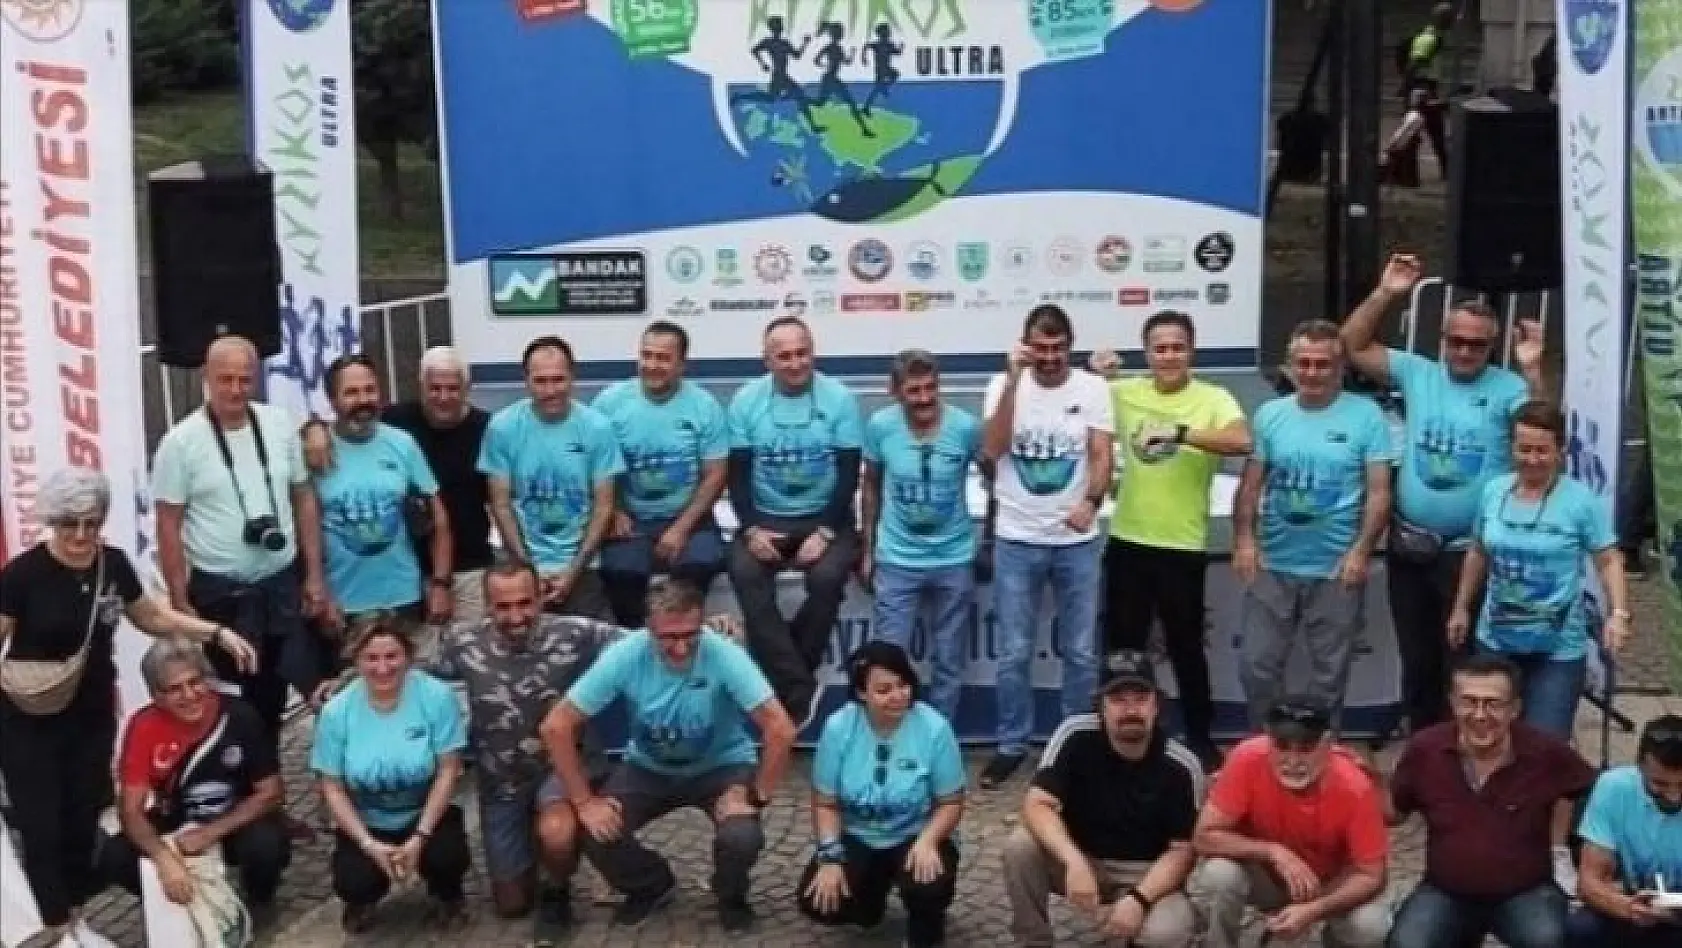 İkinci Uluslararası Kyzikos Ultra Maratonu Erdek' te düzenlenecek